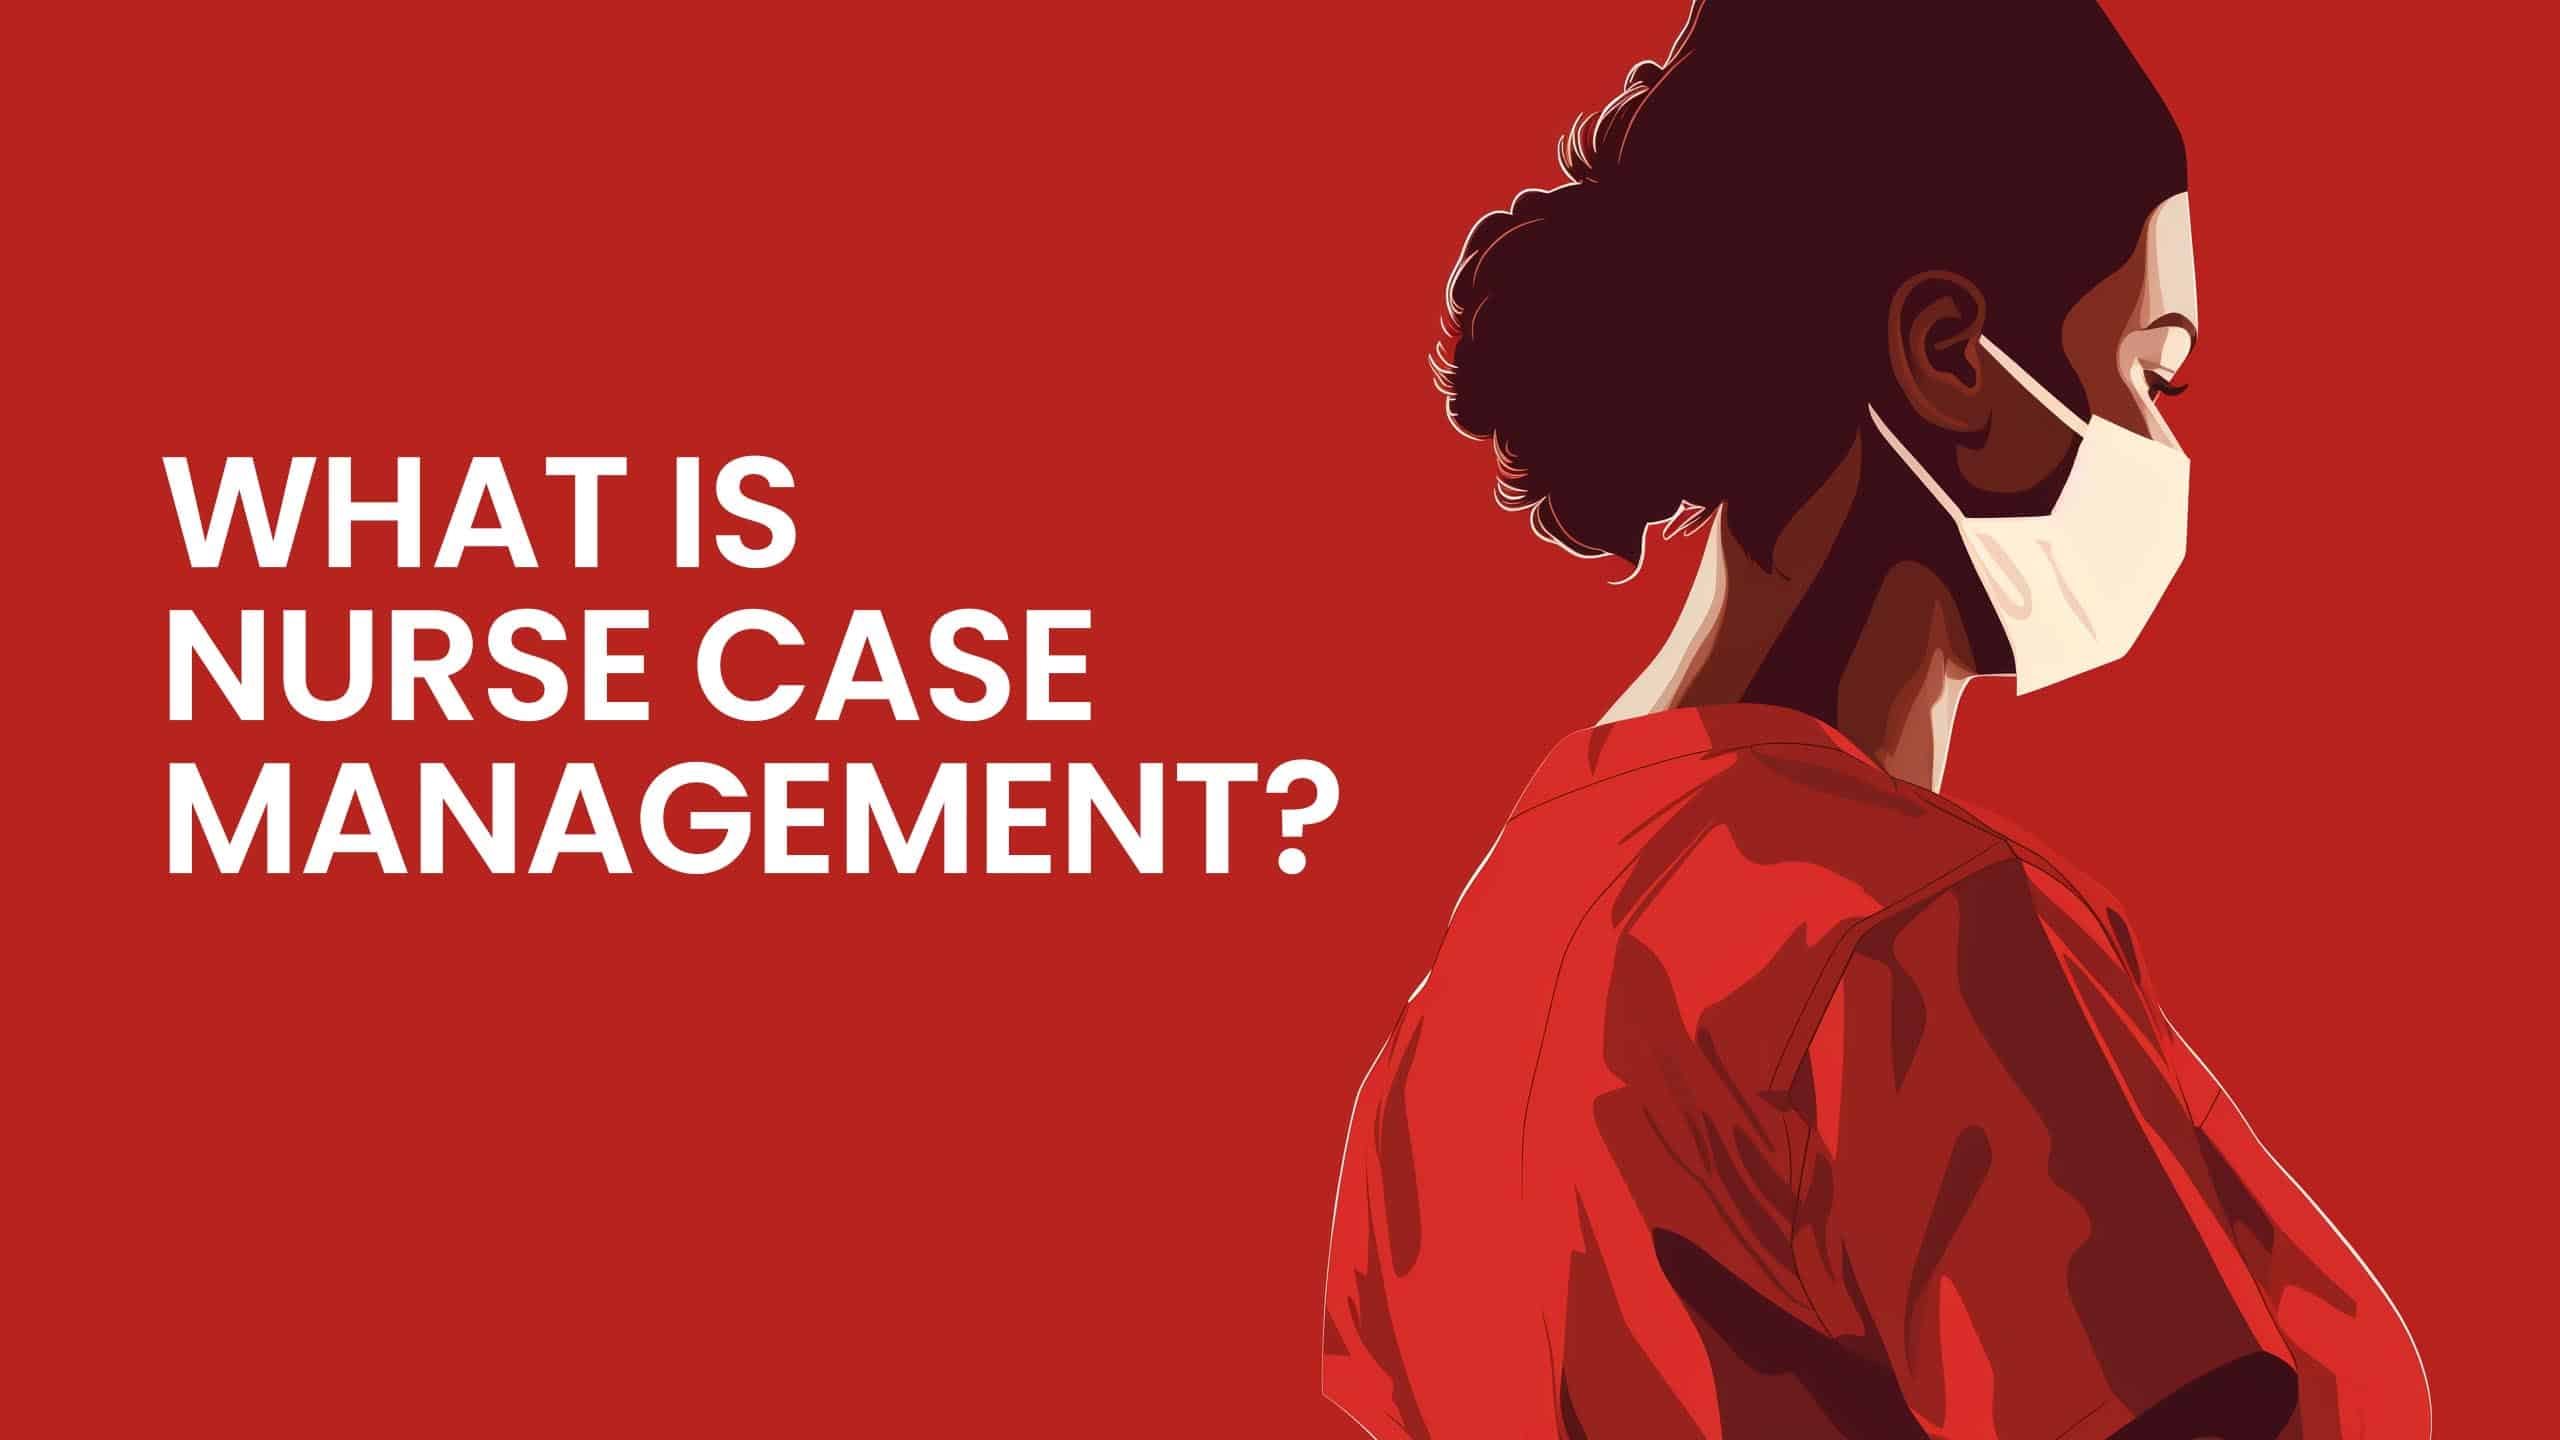 What is nurse case management?